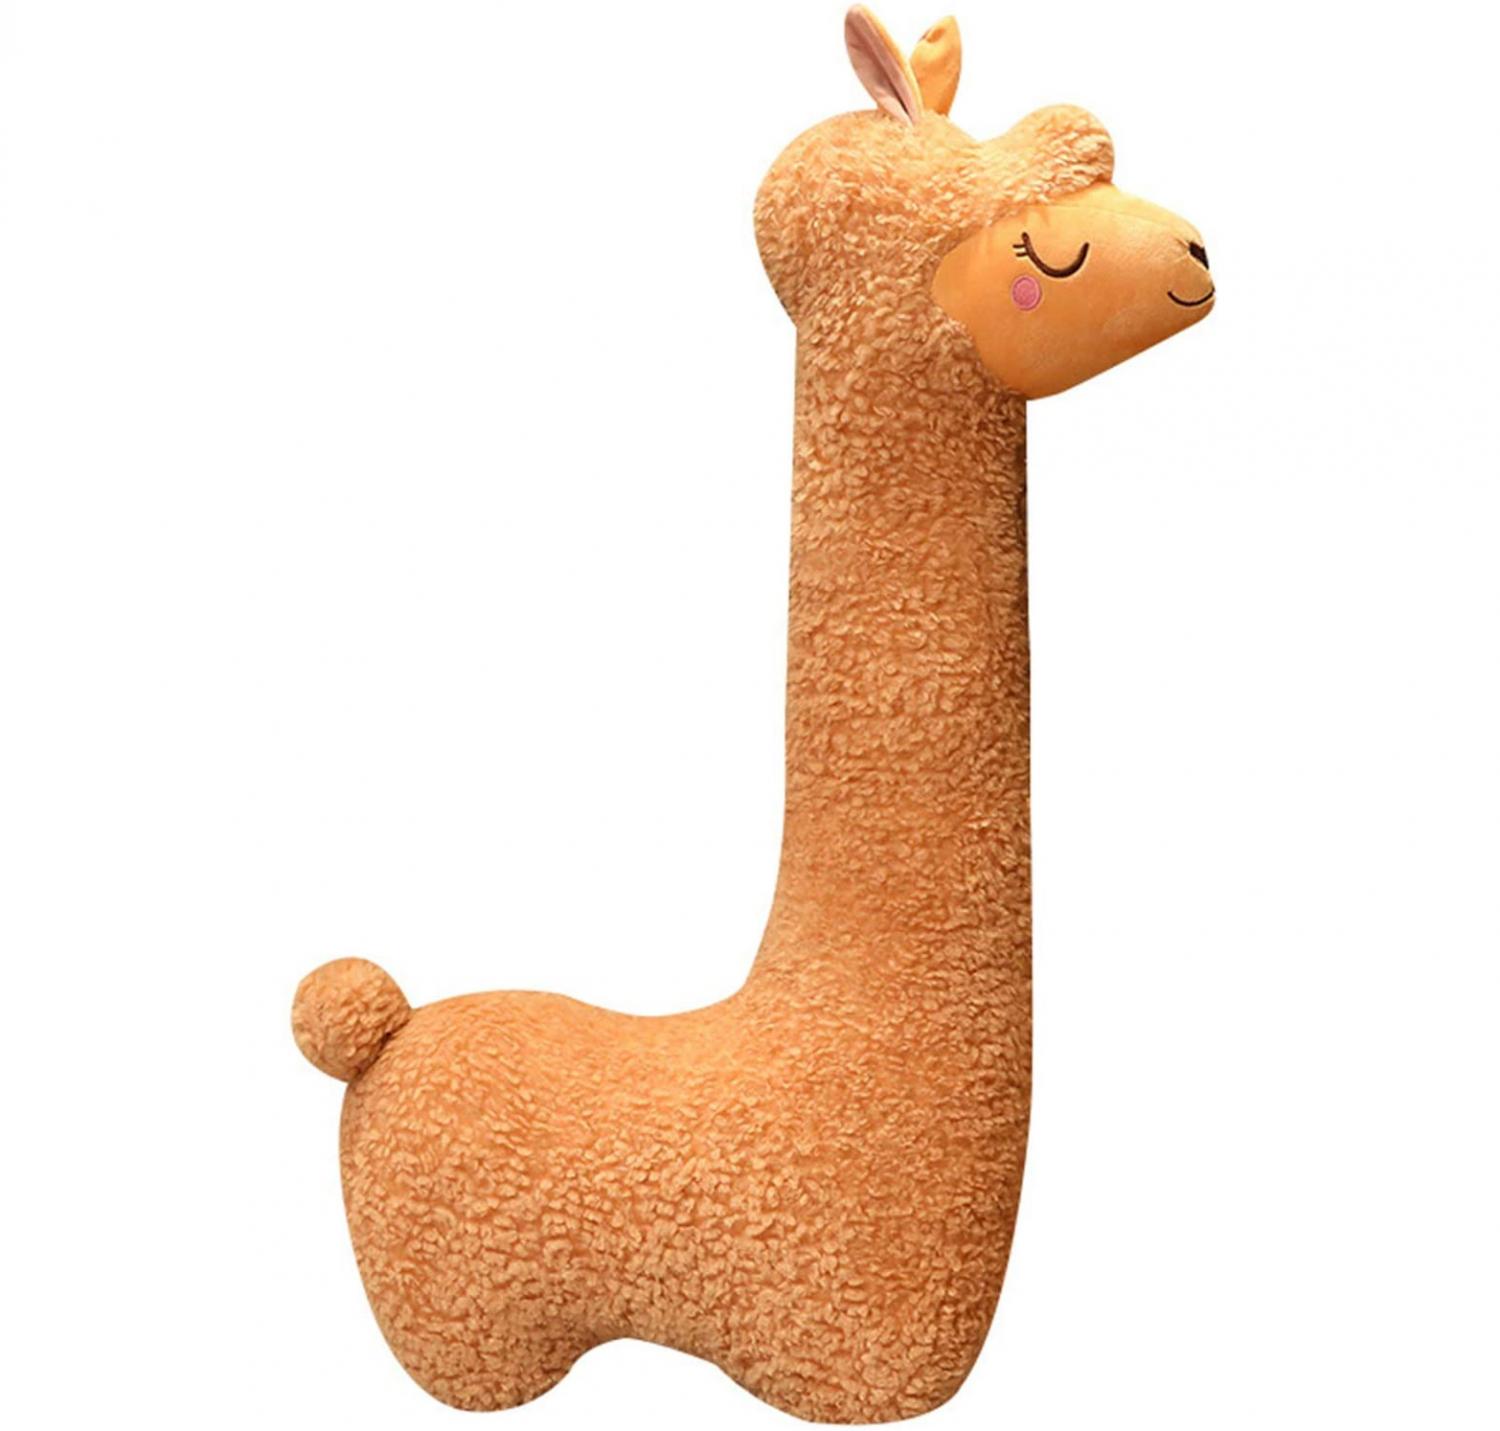 Llama body pillow - life-size alpaca body pillow